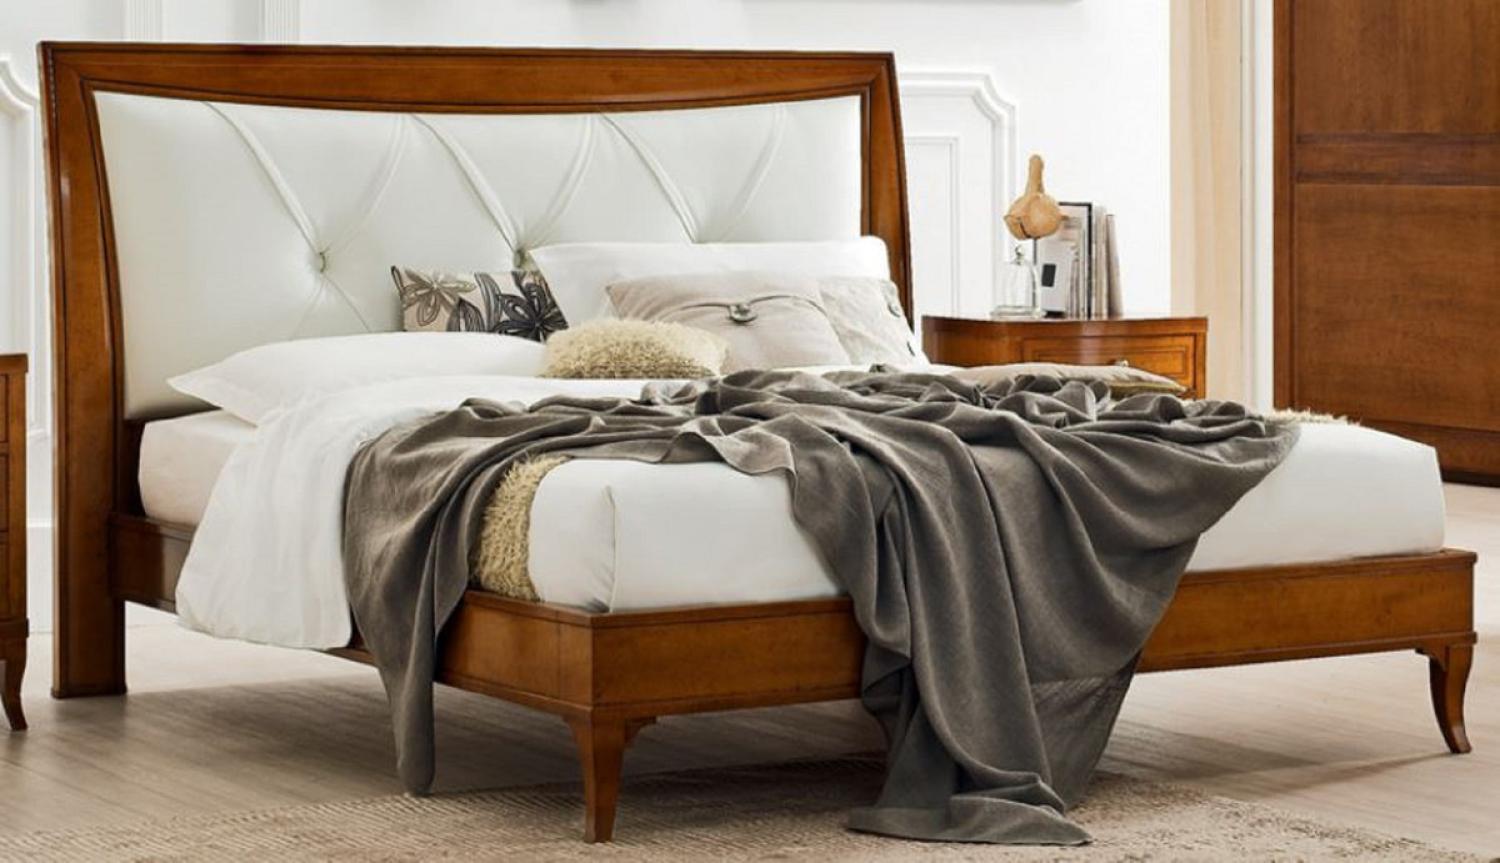 Casa Padrino Luxus Biedermeier Doppelbett Braun / Weiß 188 x 219 x H. 128 cm - Massivholz Bett mit Echtleder Kopfteil - Schlafzimmer Möbel - Luxus Qualität Bild 1